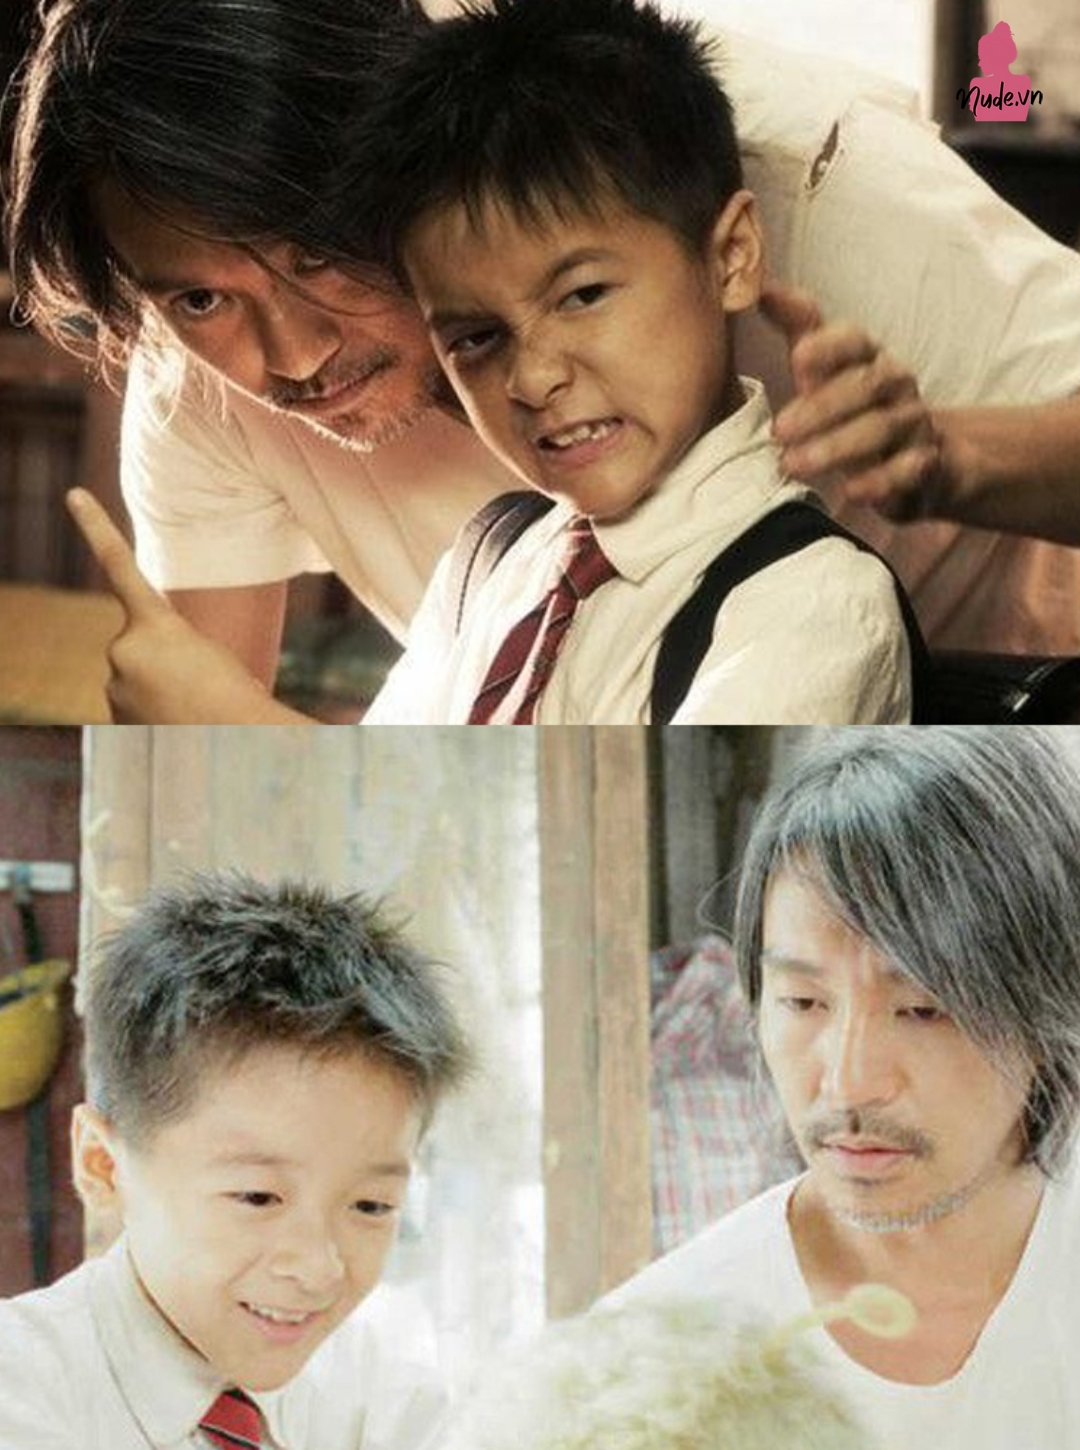 Từ Kiều từng là con trai màn ảnh của Châu Tinh Trì trong Siêu Khuyển Thần Thông năm 2008